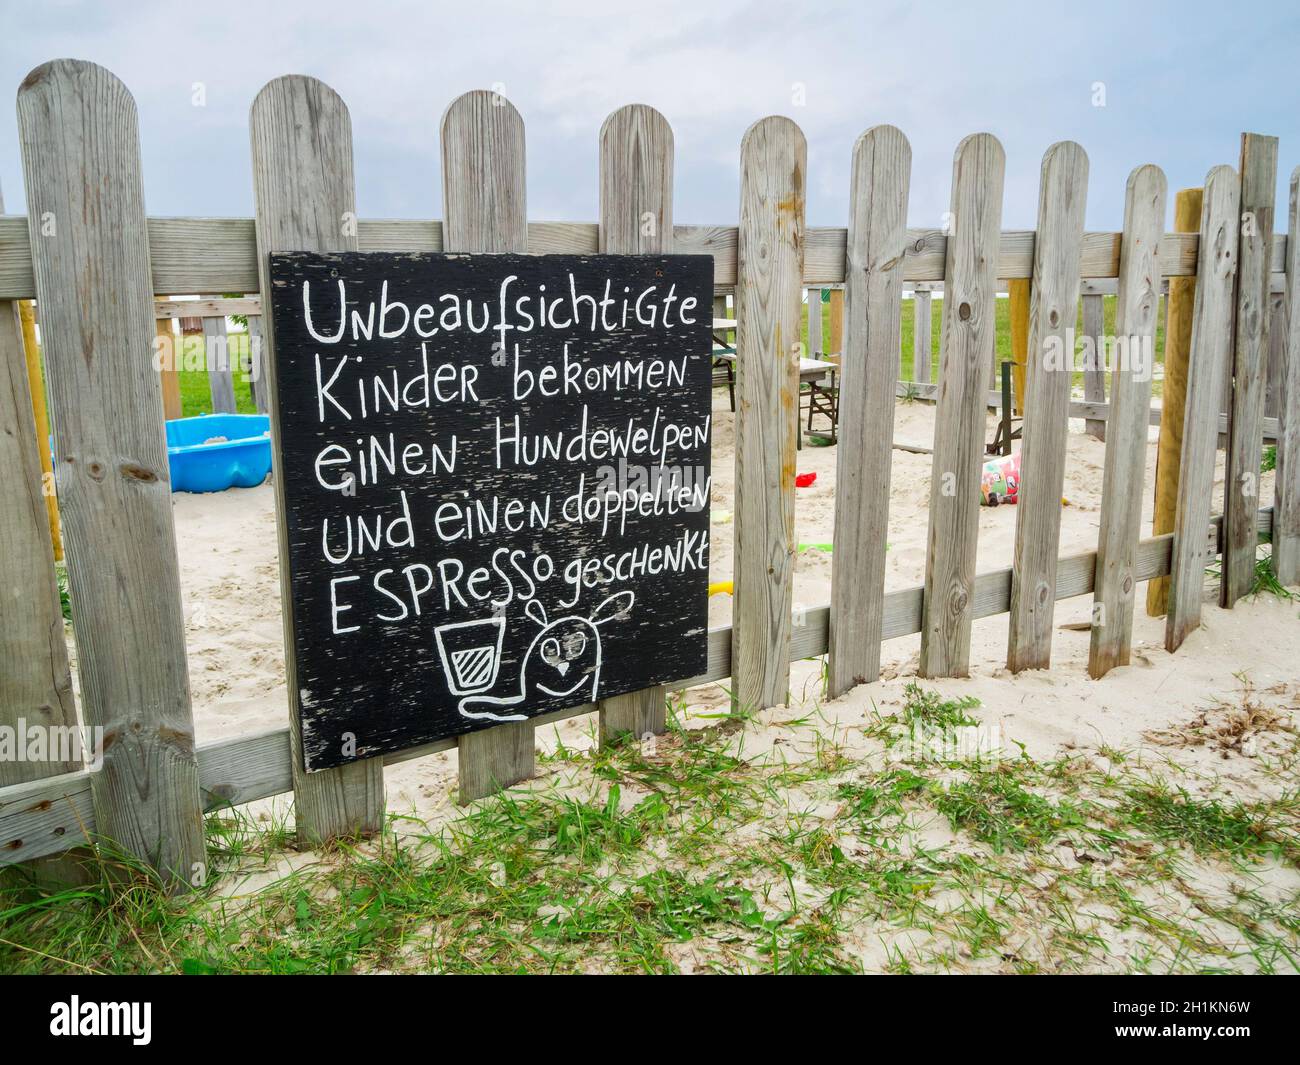 Weitwinkelansicht eines Sandkasten-Zauns mit der humorvollen Aufschrift (in deutschen Worten: 'Unbeaufsichtigte Kinder bekommen einen Hundewelpen un e Banque D'Images